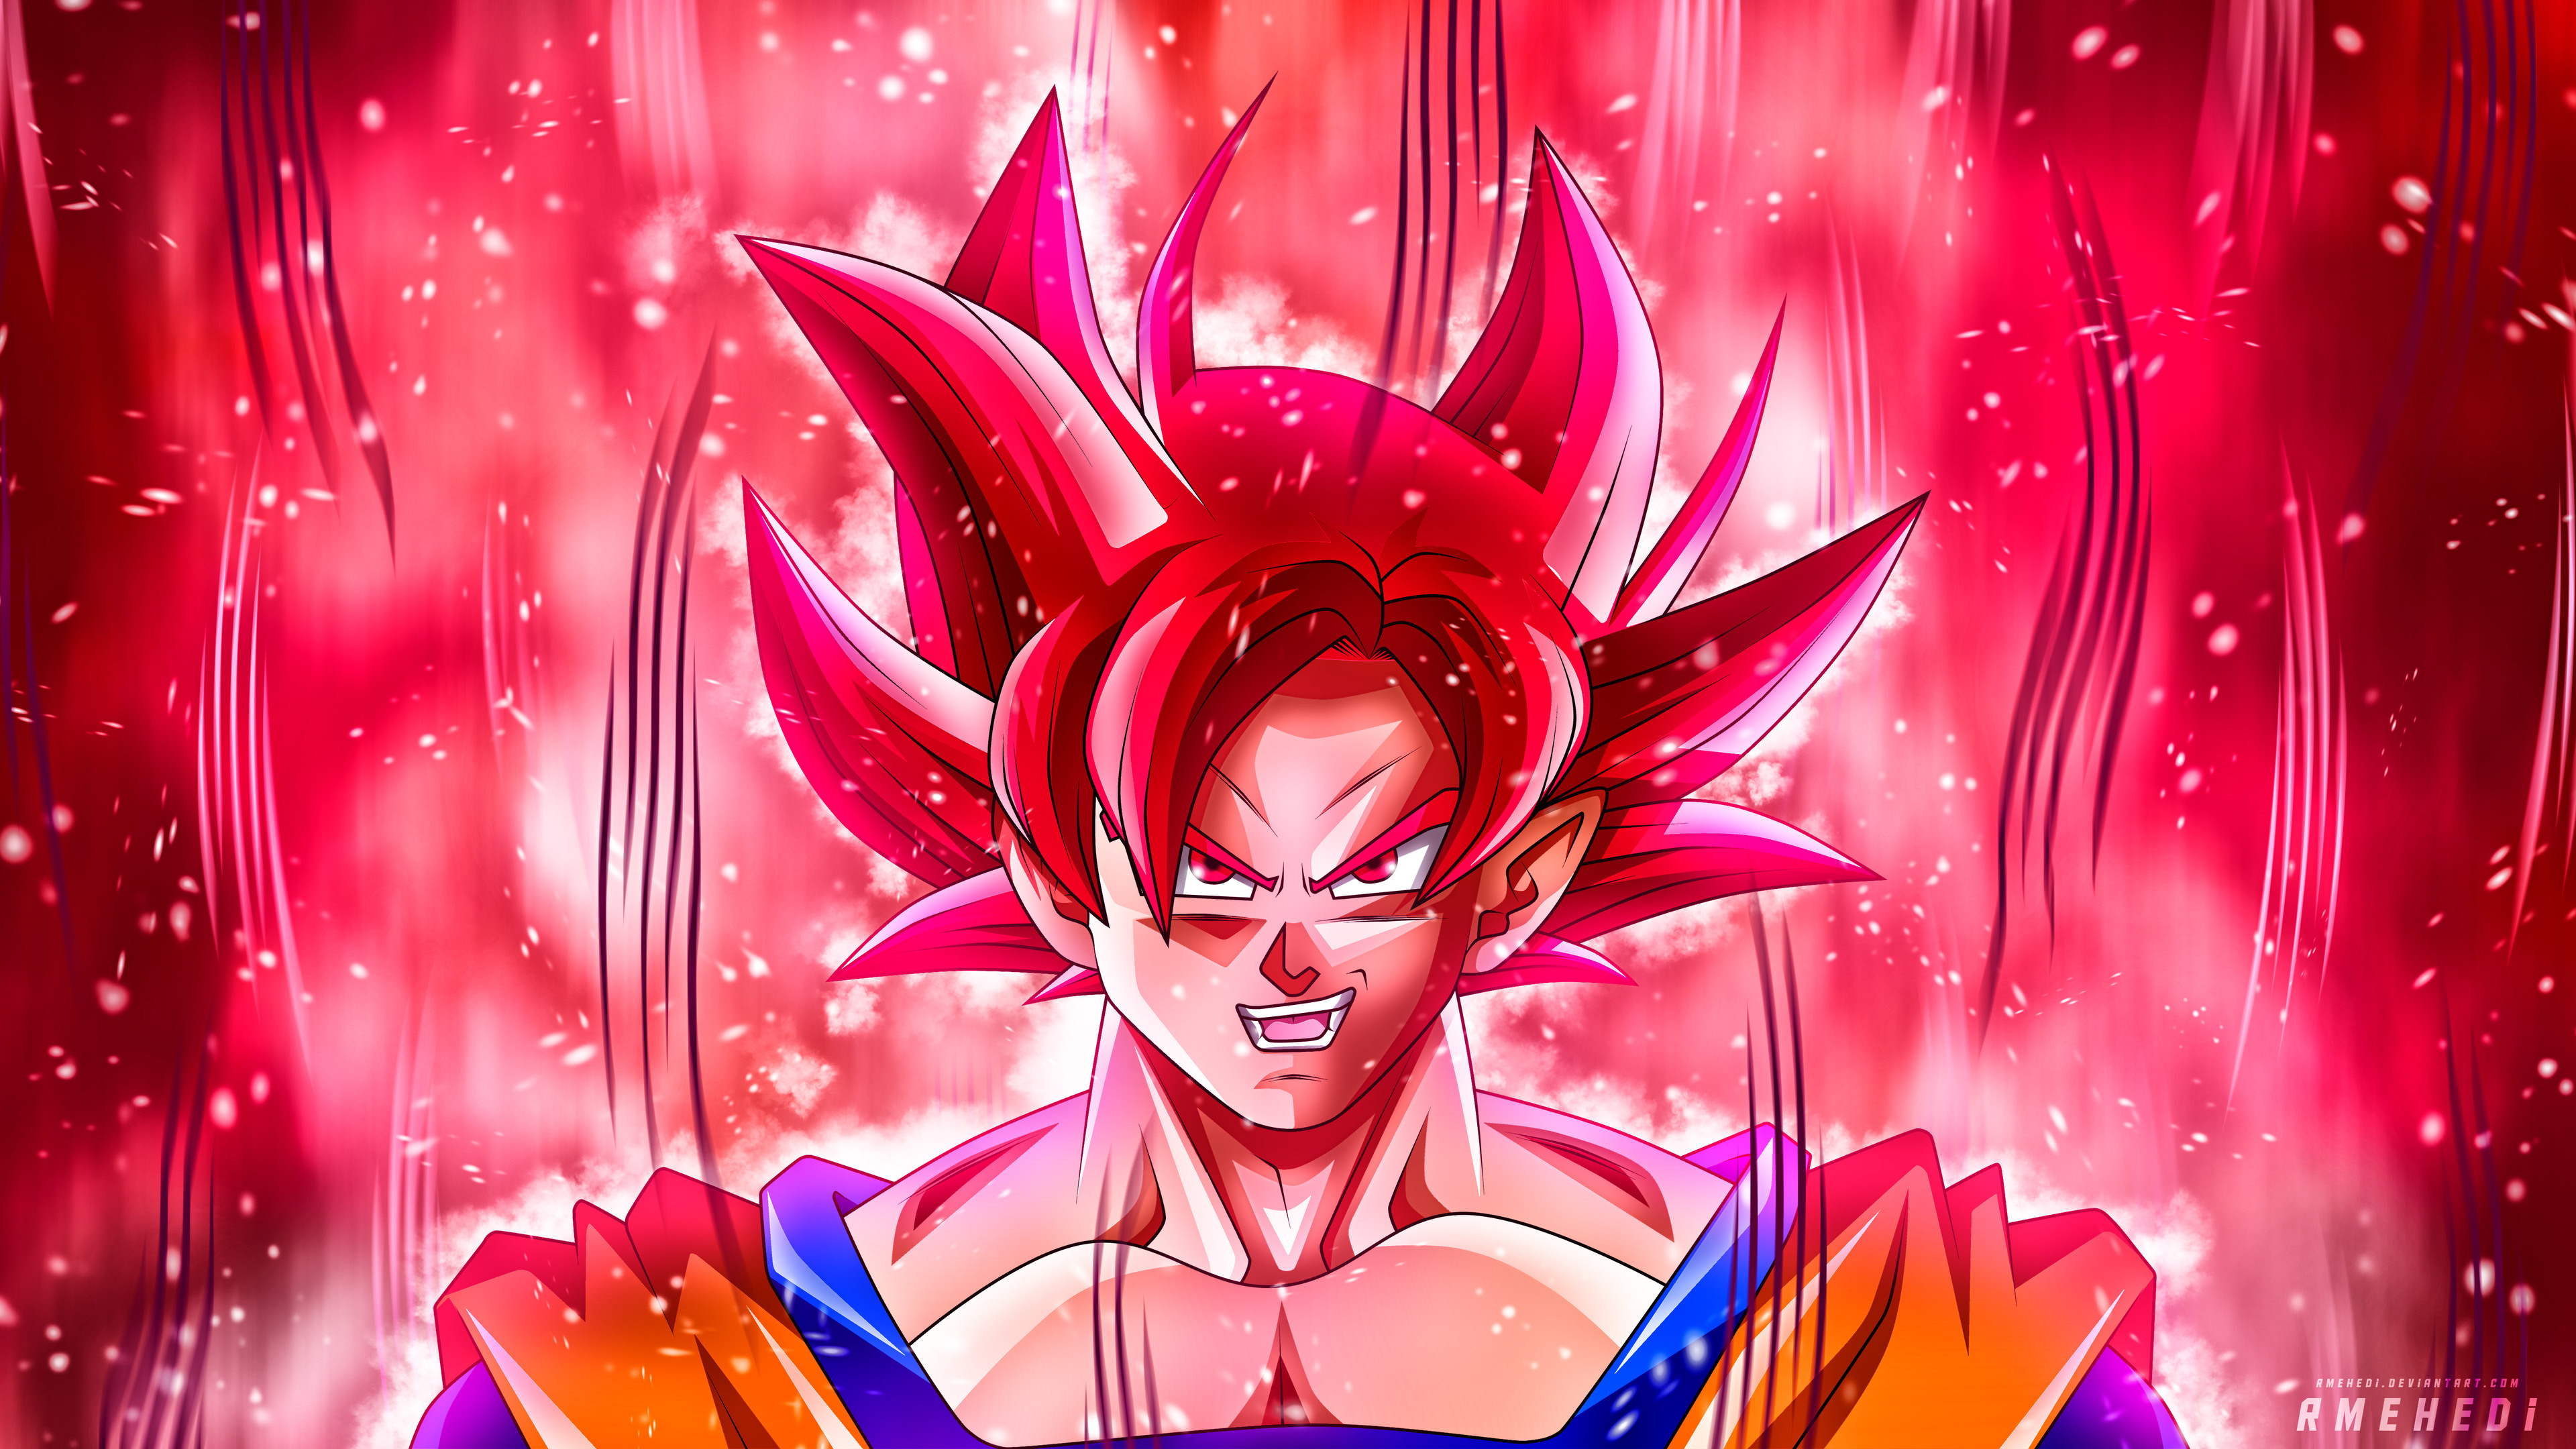 Hình ảnh Goku đầy uyển chuyển và quyết liệt sẽ khiến bạn bị cuốn hút vào thế giới của anh hùng này. Hãy cùng chiêm ngưỡng vẻ đẹp của Goku trong hình ảnh liên quan.